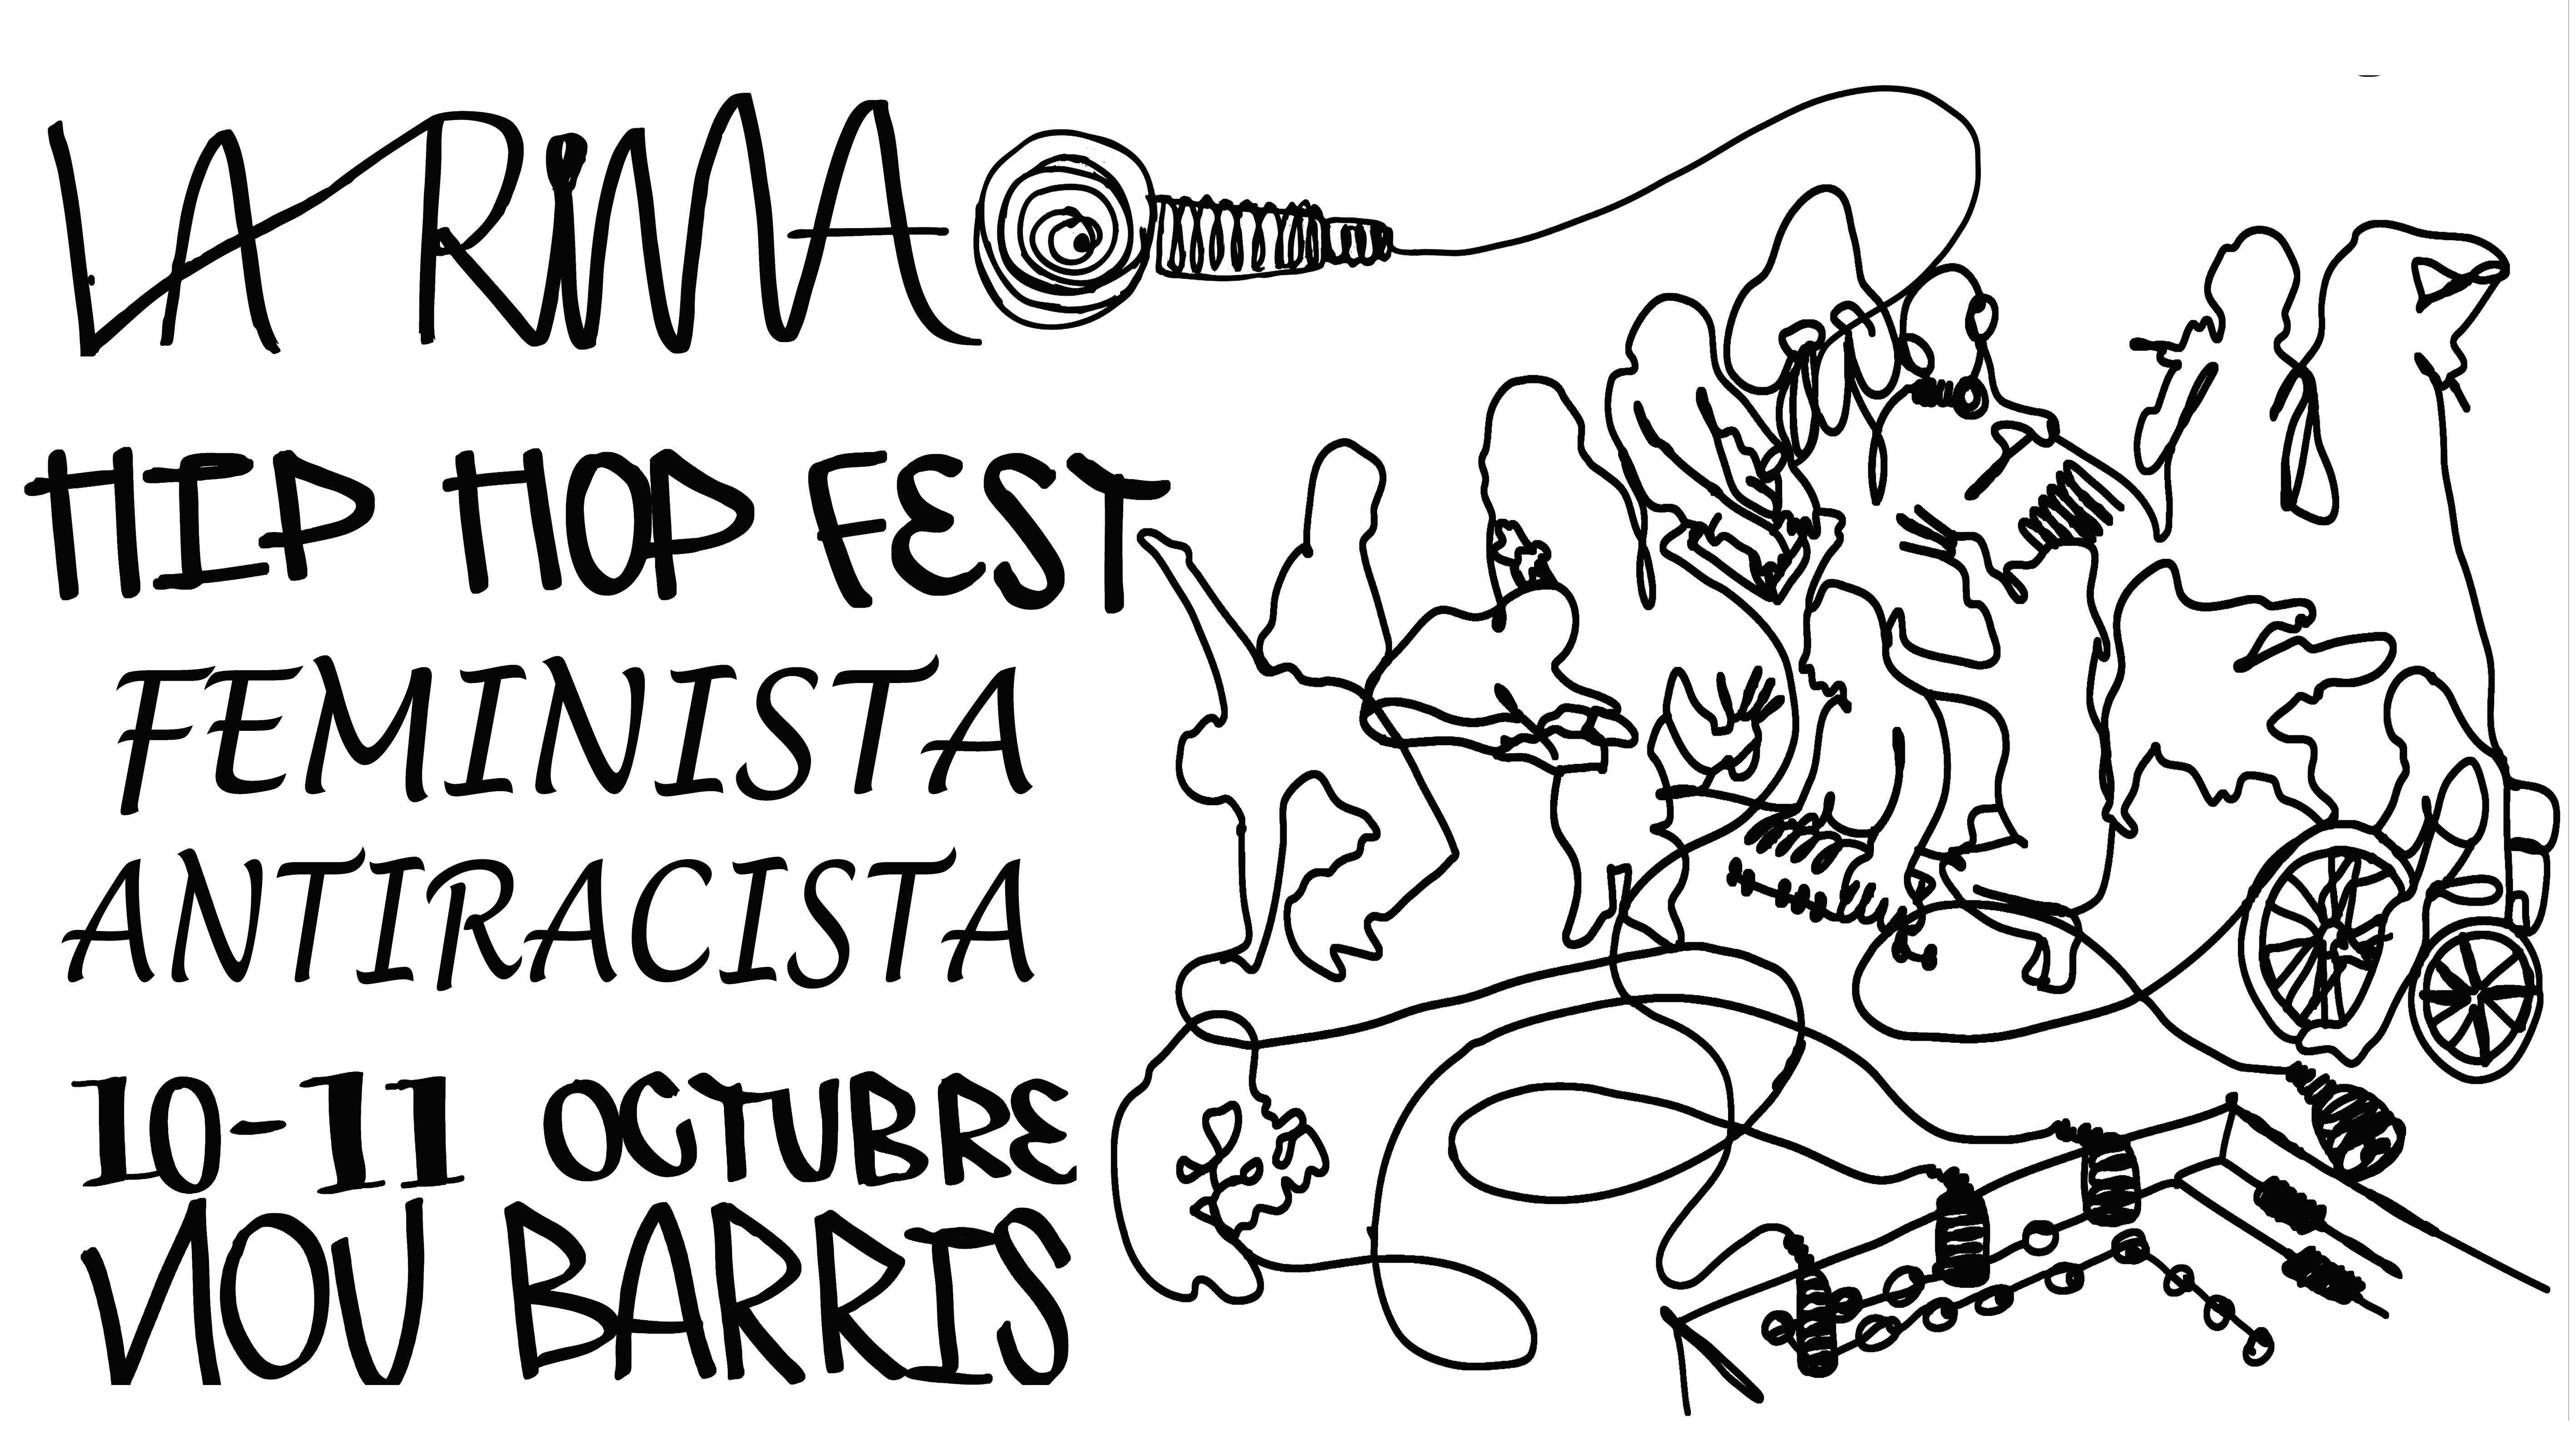 La Rima. Festival de hiphop feminista y antirracista a Nou Barris: 10 y 11 de OctubreLA RIMA HipHopFest feminista i antirracista a NouBarris: 10 i 11 d’Octubre